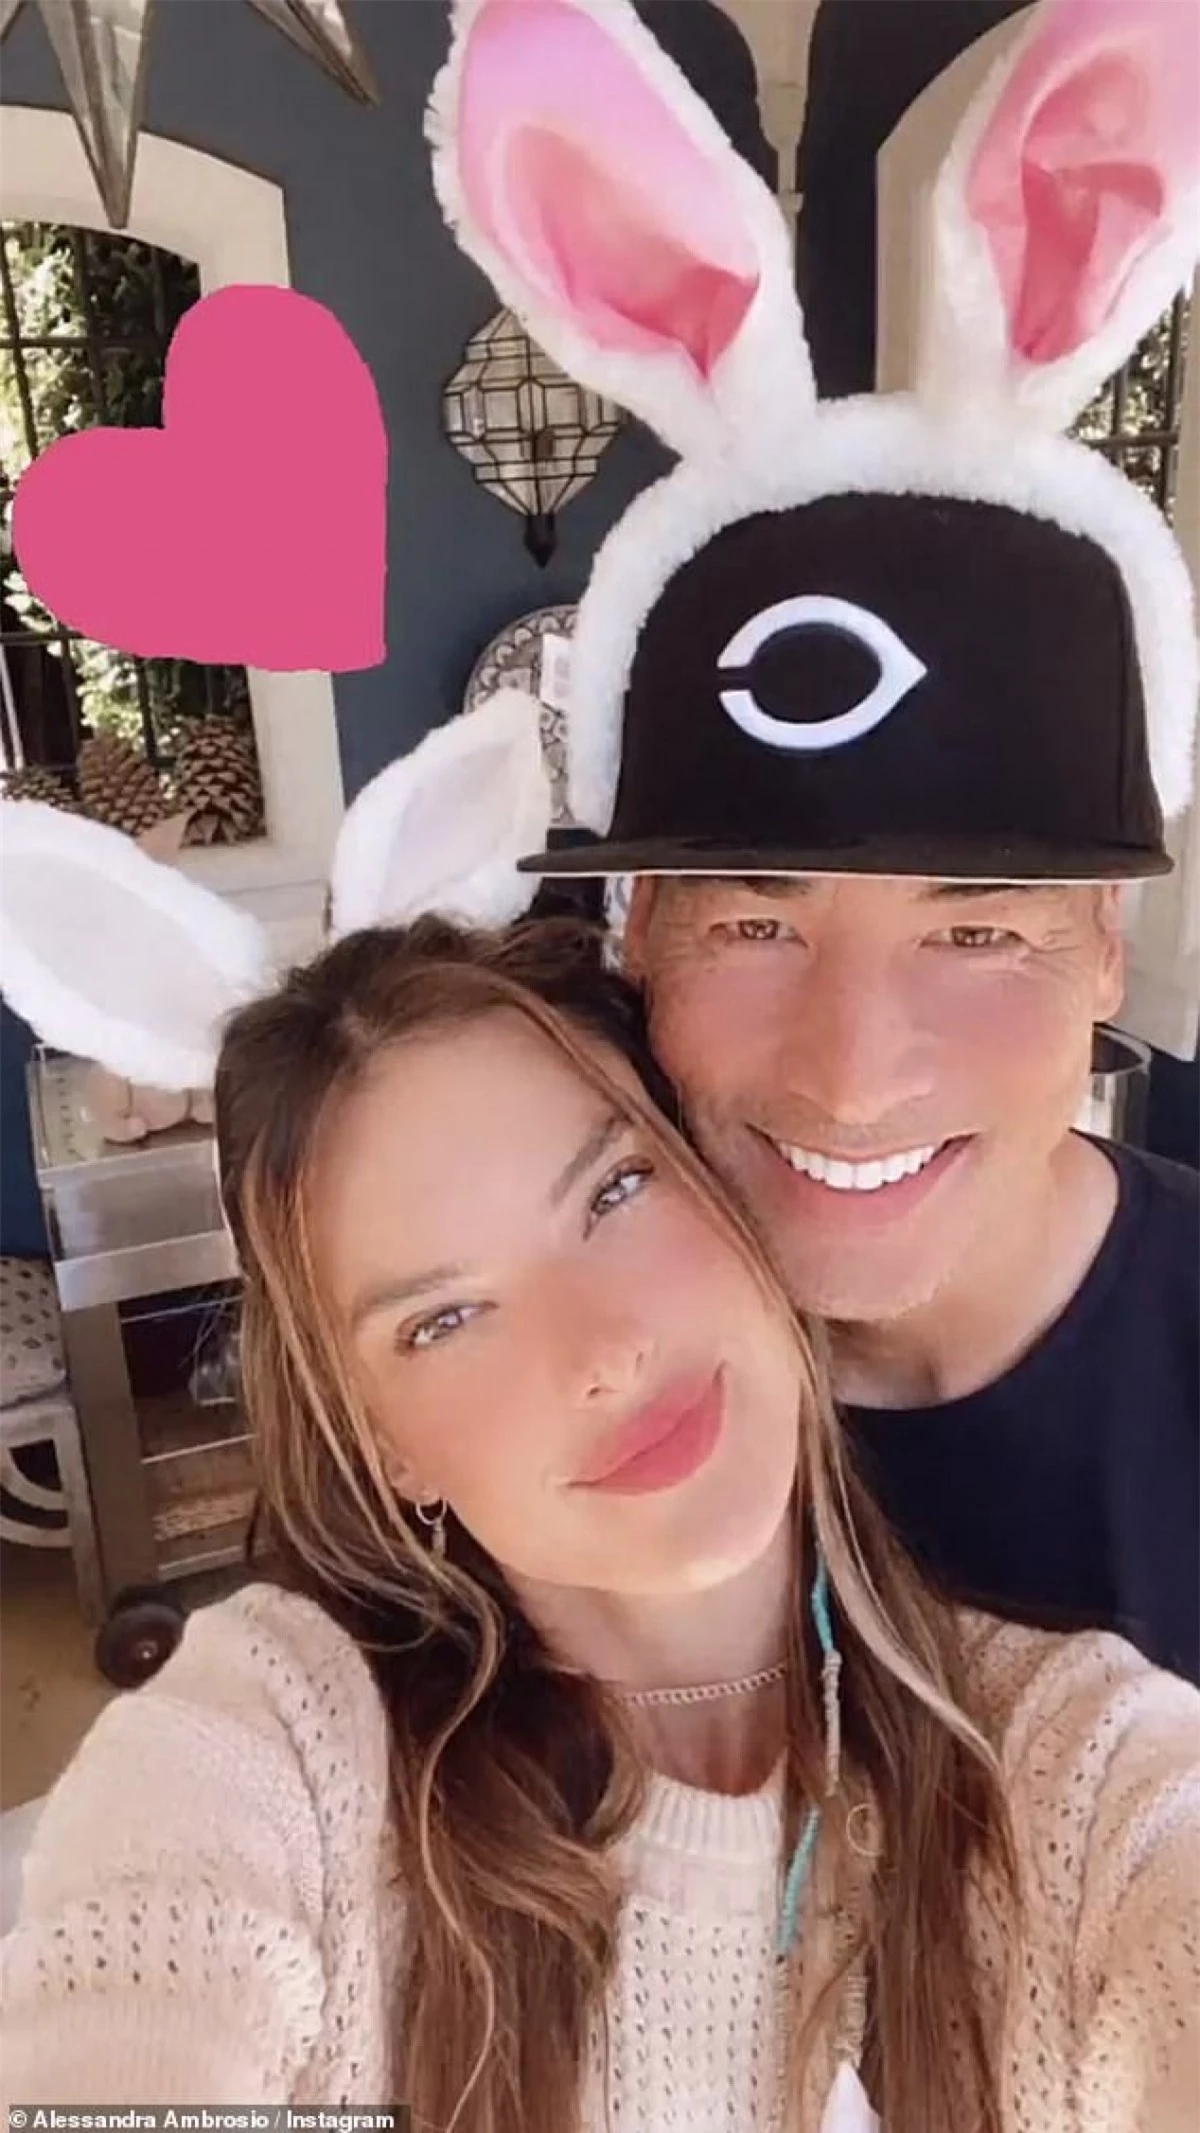 Nhân dịp lễ phục sinh, Alessandra Ambrosio chia sẻ loạt khoảnh khắc ngọt ngào bên tình yêu mới - Richard Lee trên trang Instagram cá nhân.